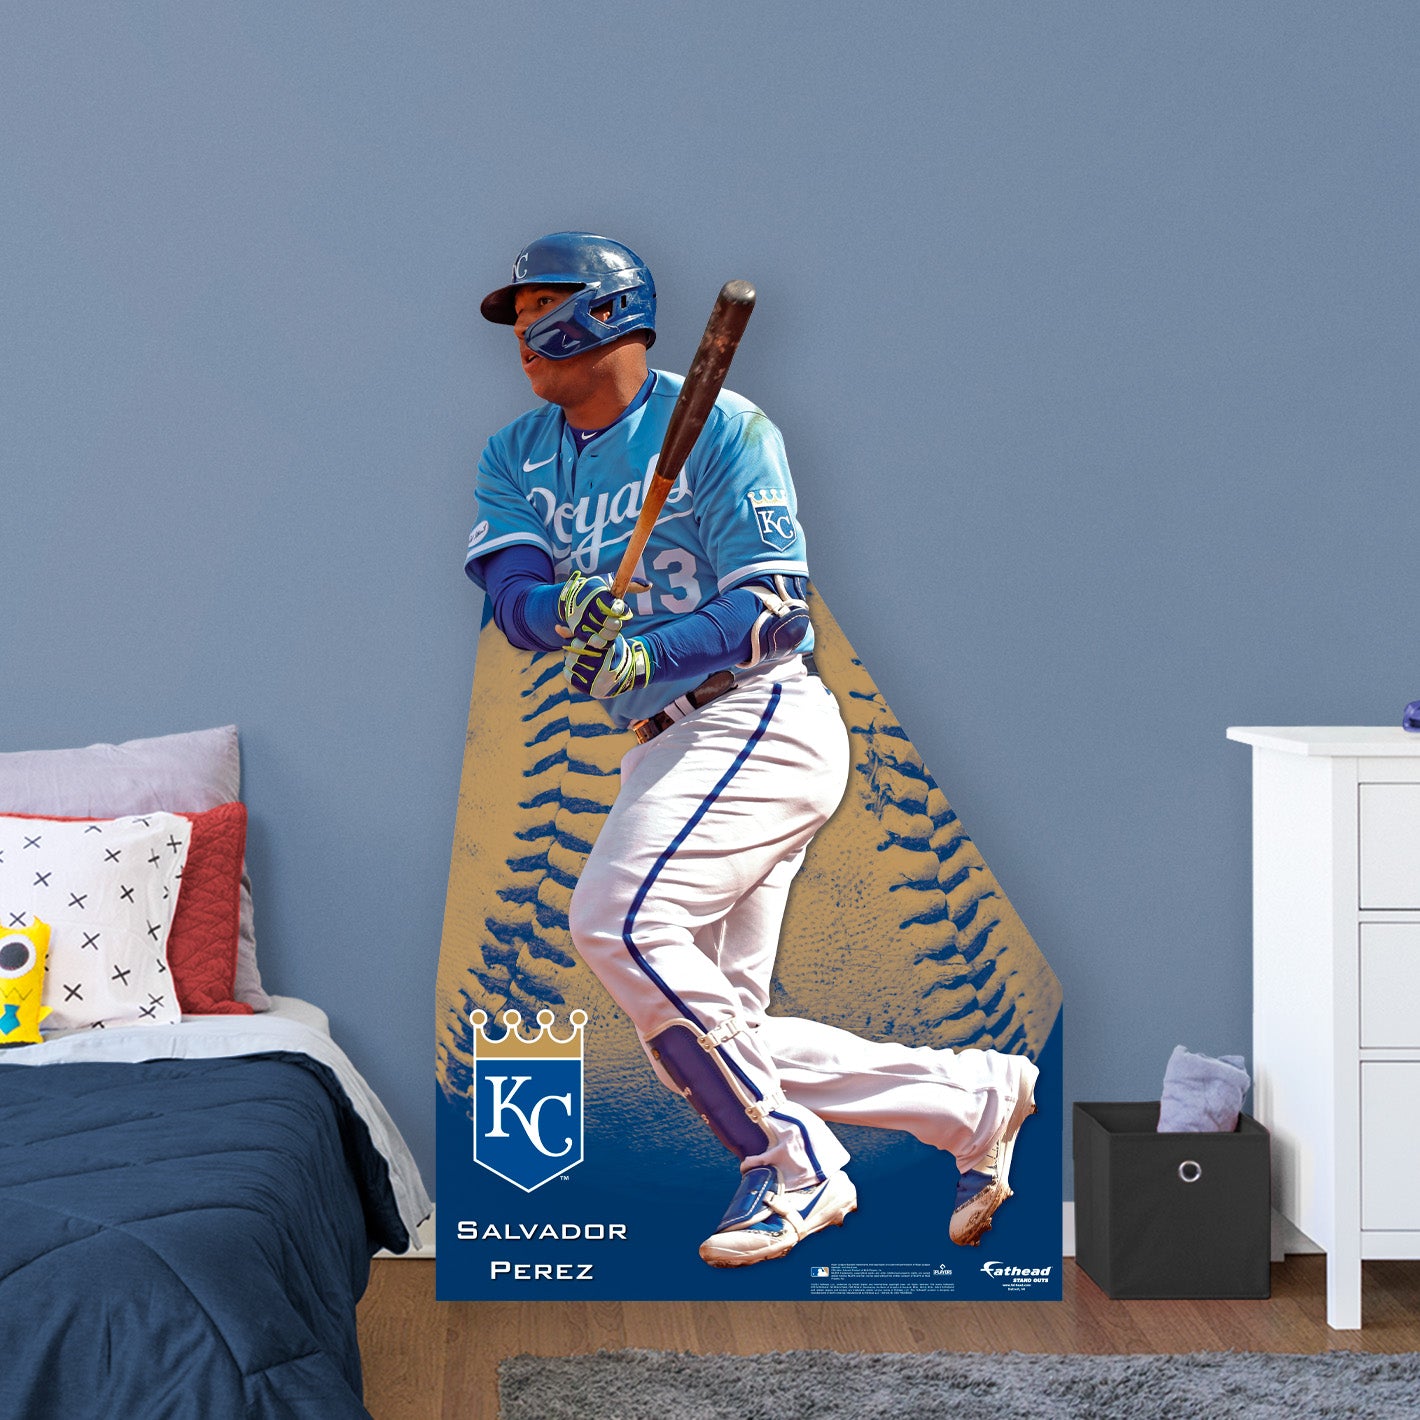 Kansas City Royals: Salvador Perez 2022 Poster - Officially